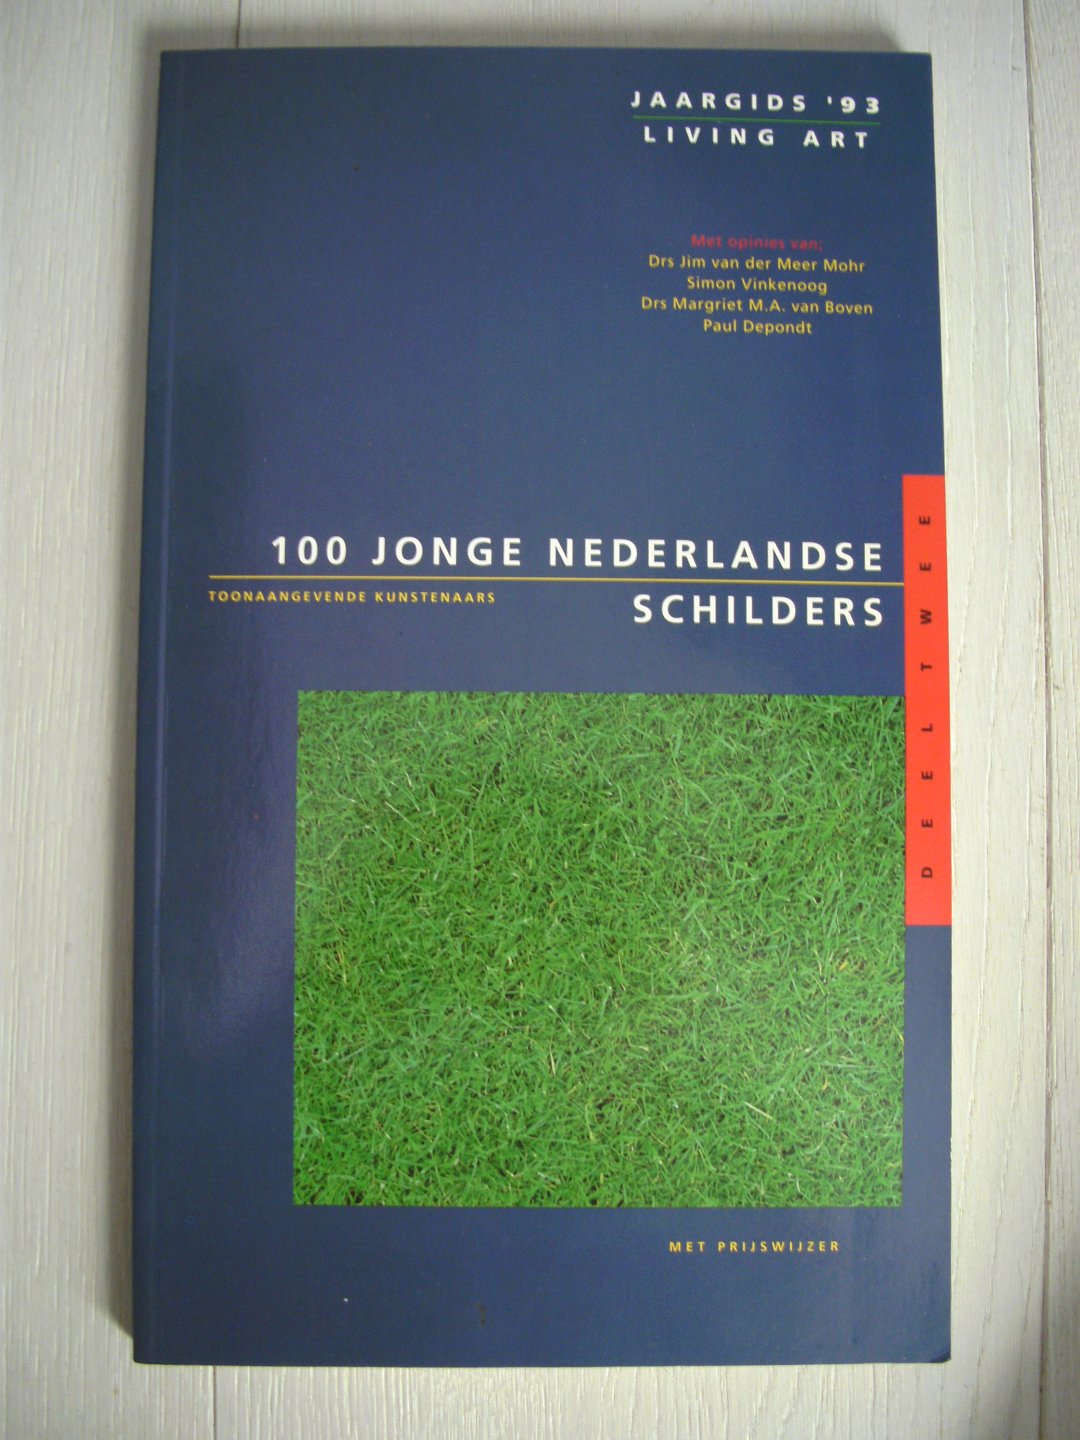 Ginsberg - Jaargids / 93 100 jonge ned. schilders / druk 1